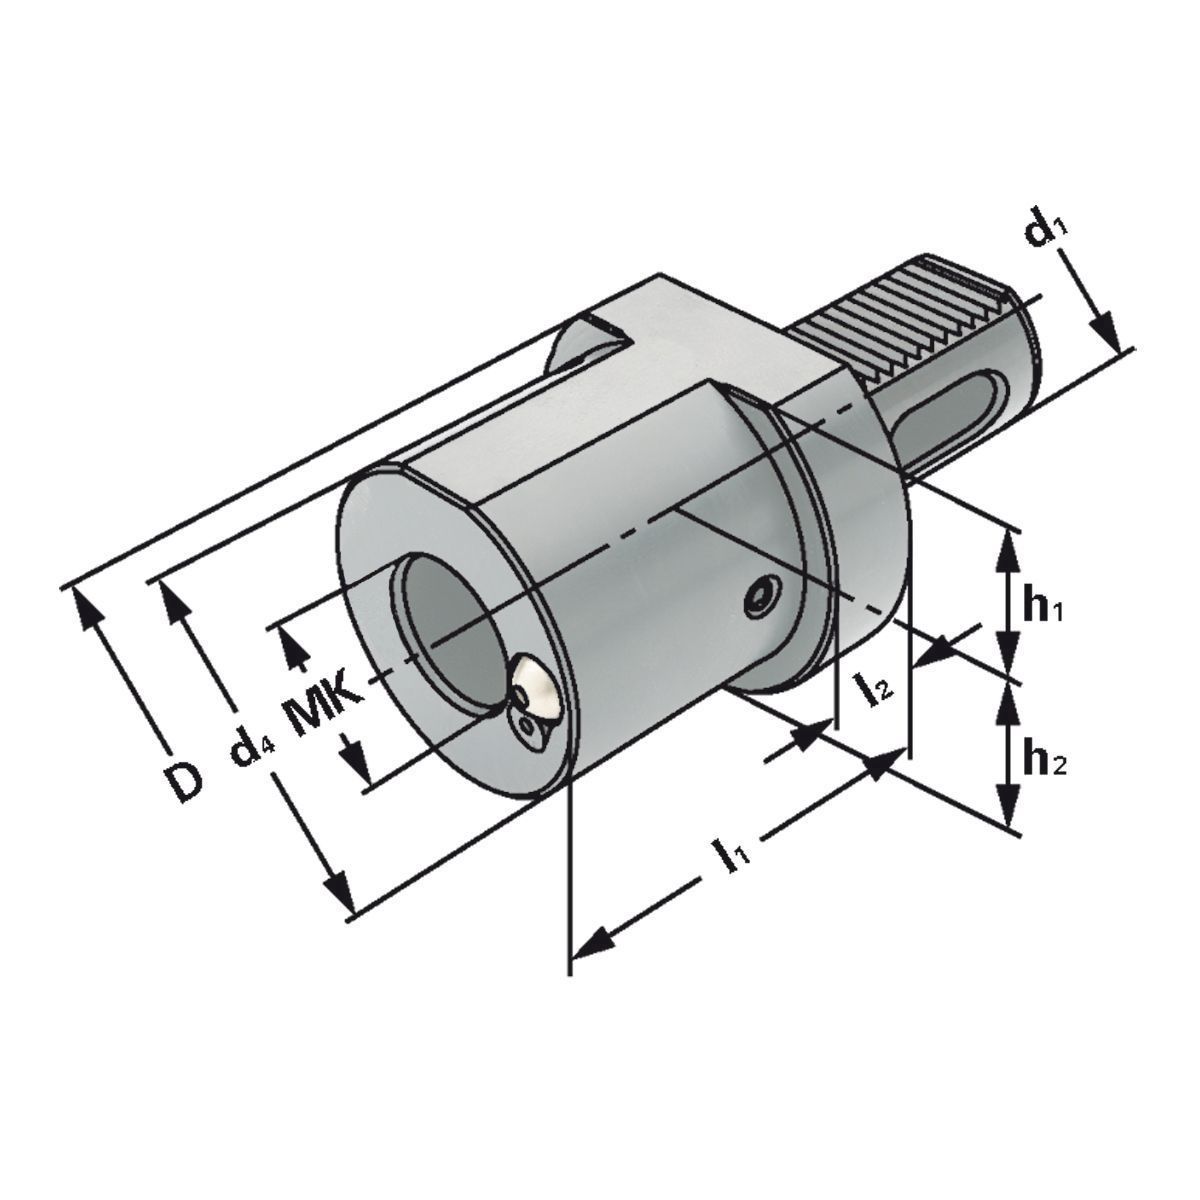 MK-Bohrerhalter F1-50xMK2 DIN 69880 (ISO 10889)